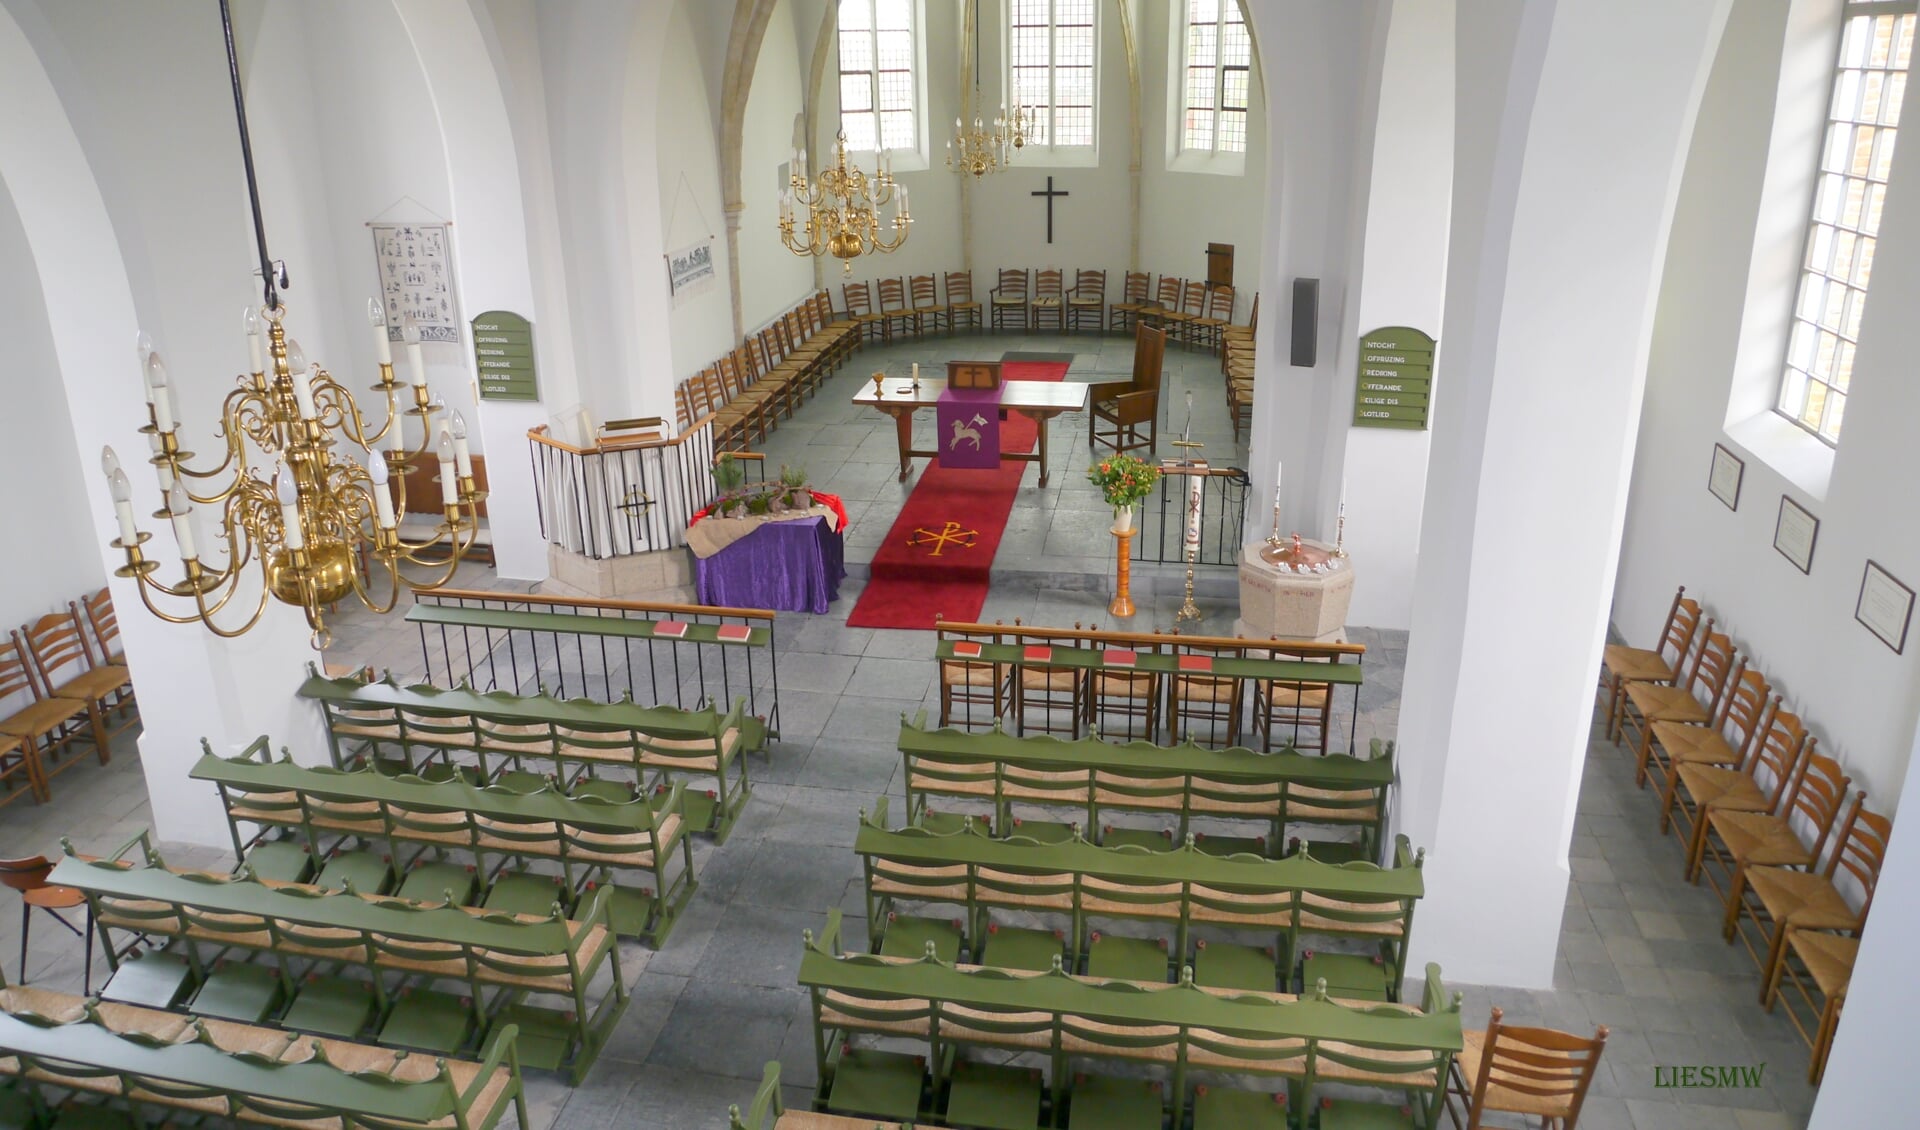 Protestantse Kerk Bemmel. (foto: Lies Manders)